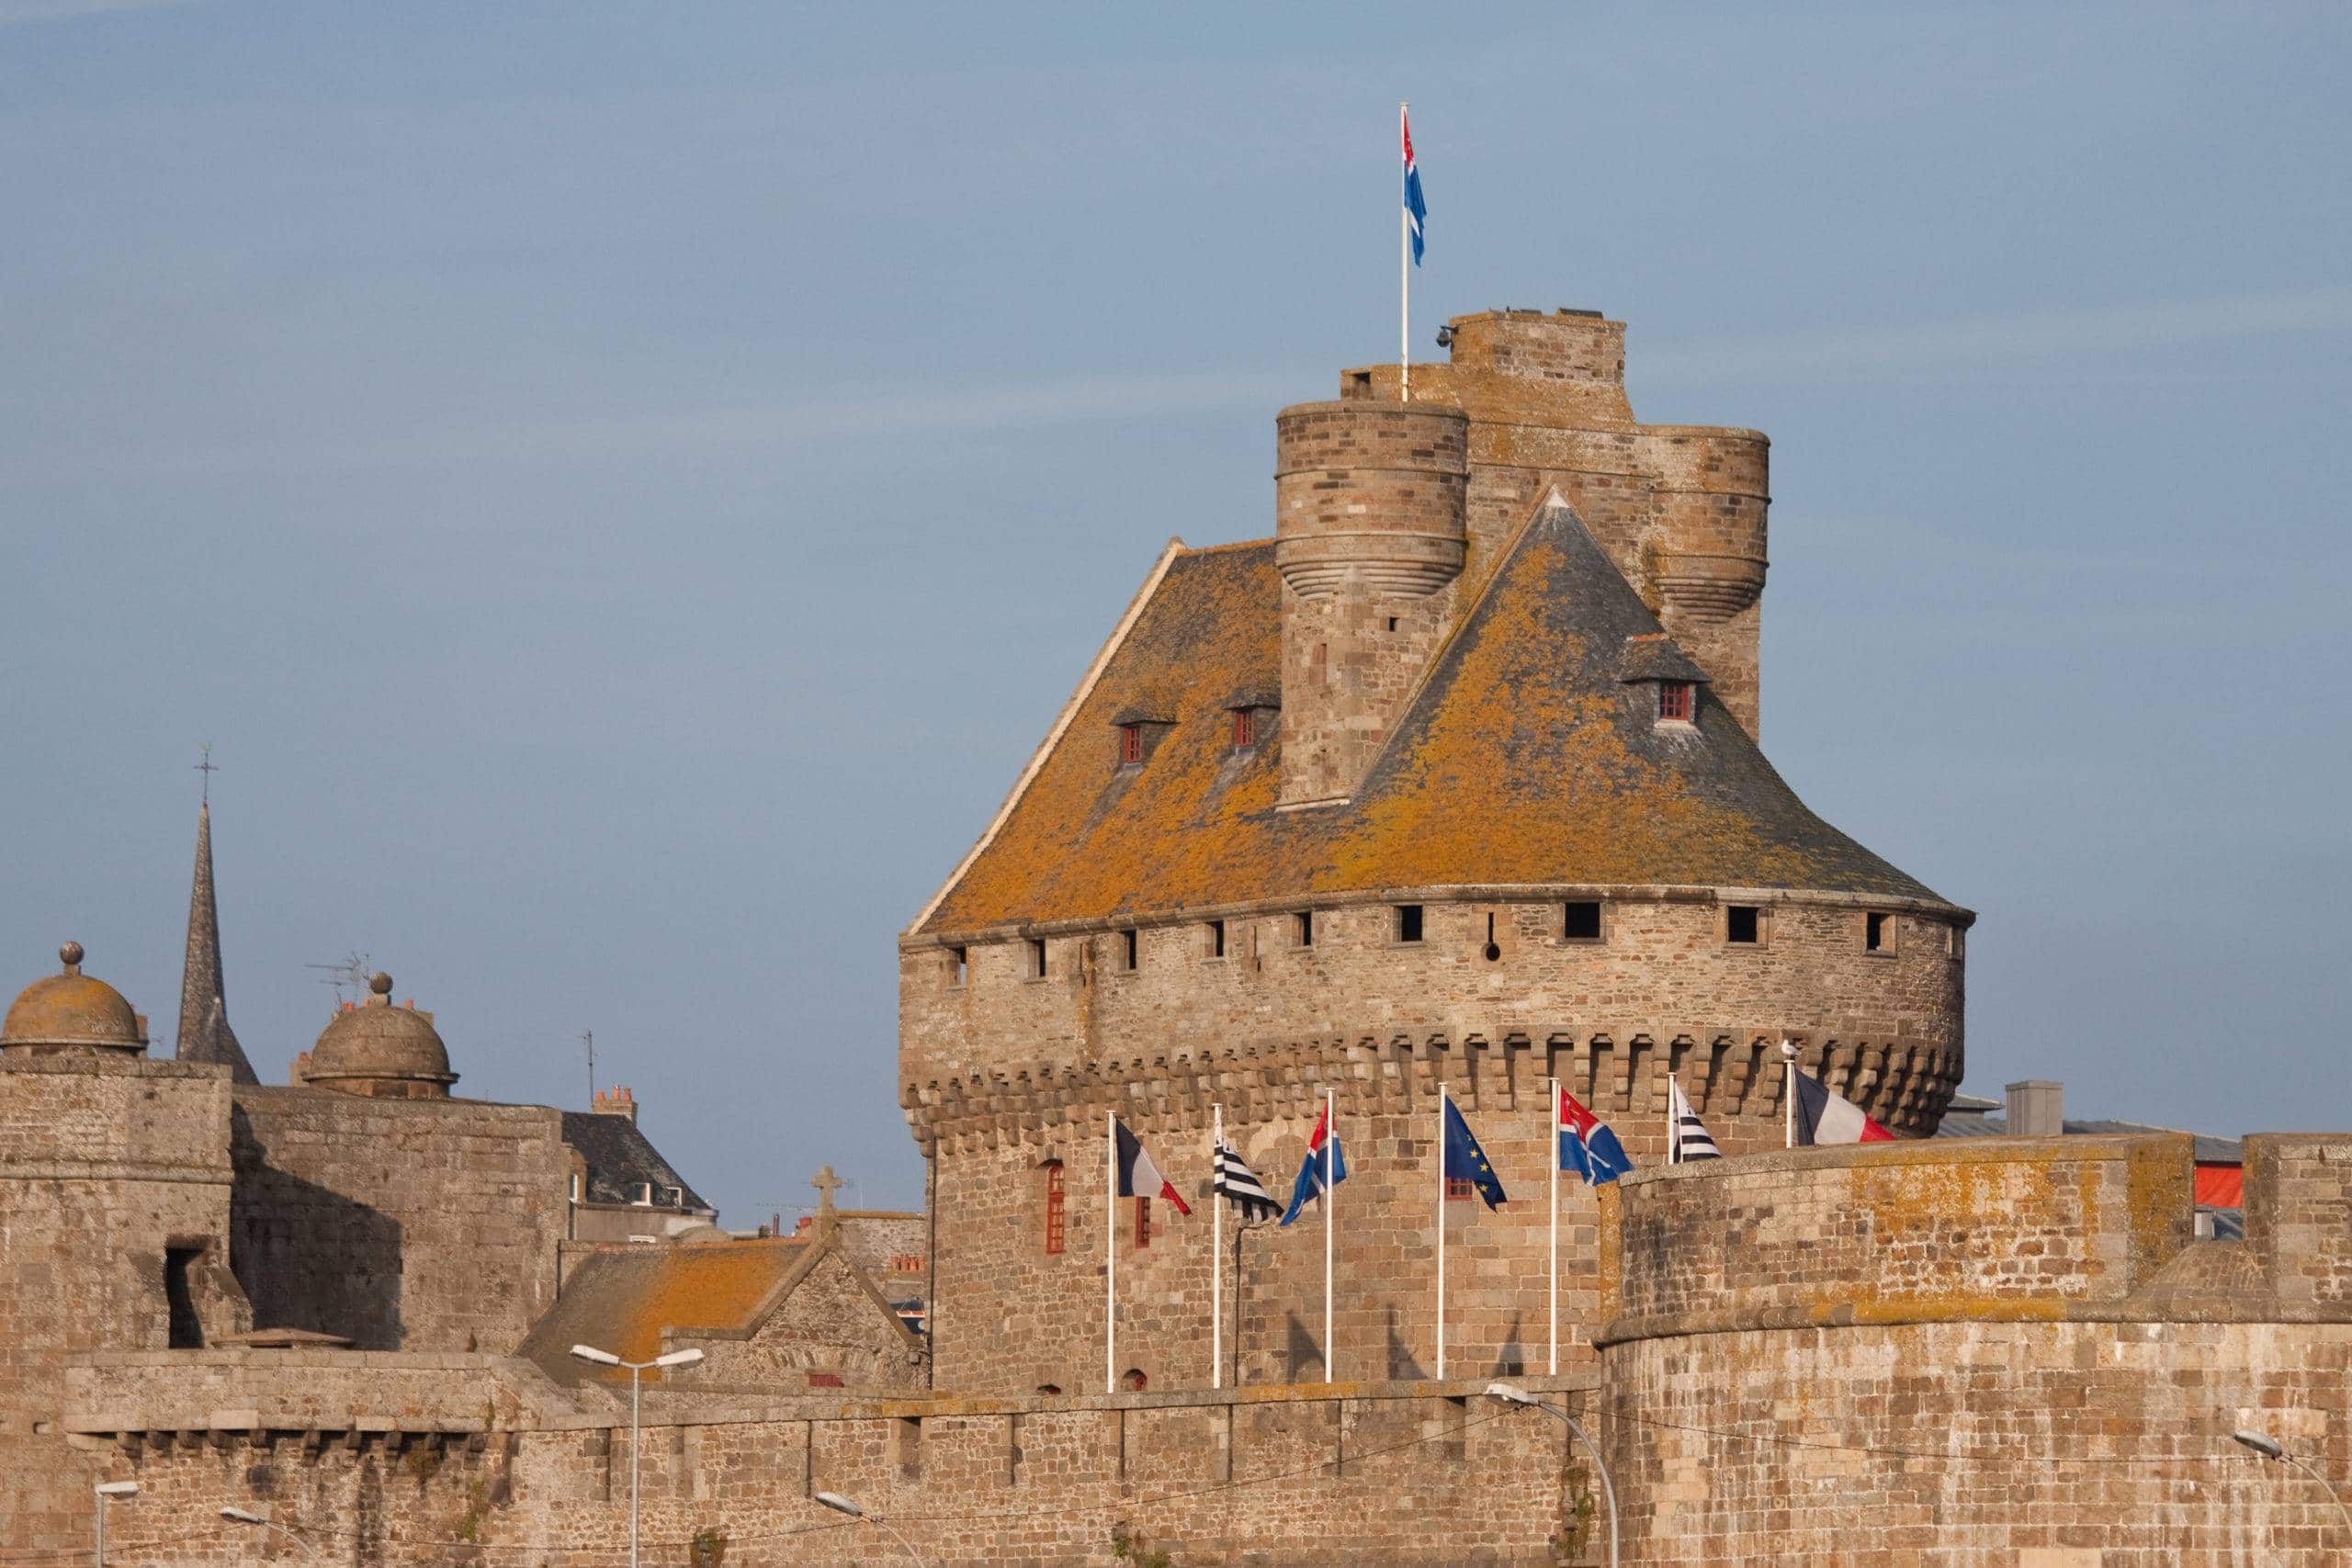 Le château de Saint-Malo © Guillaume Piolle CC by 3.0